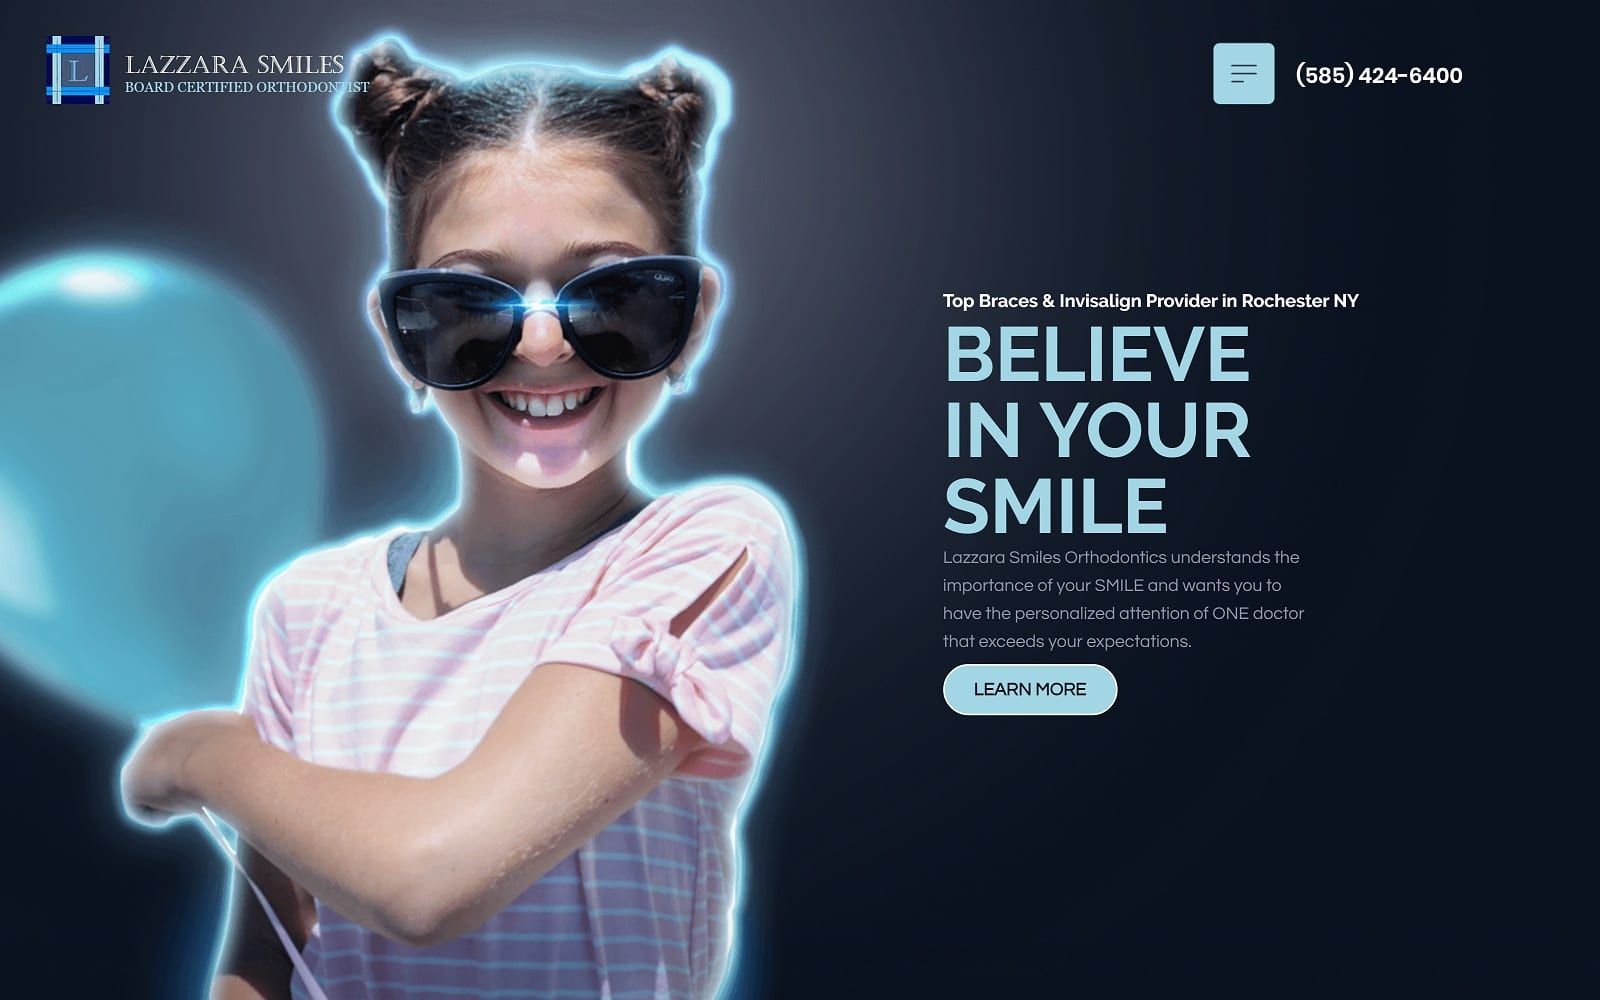 The screenshot of lazzara smiles orthodontics toothmover. Com website